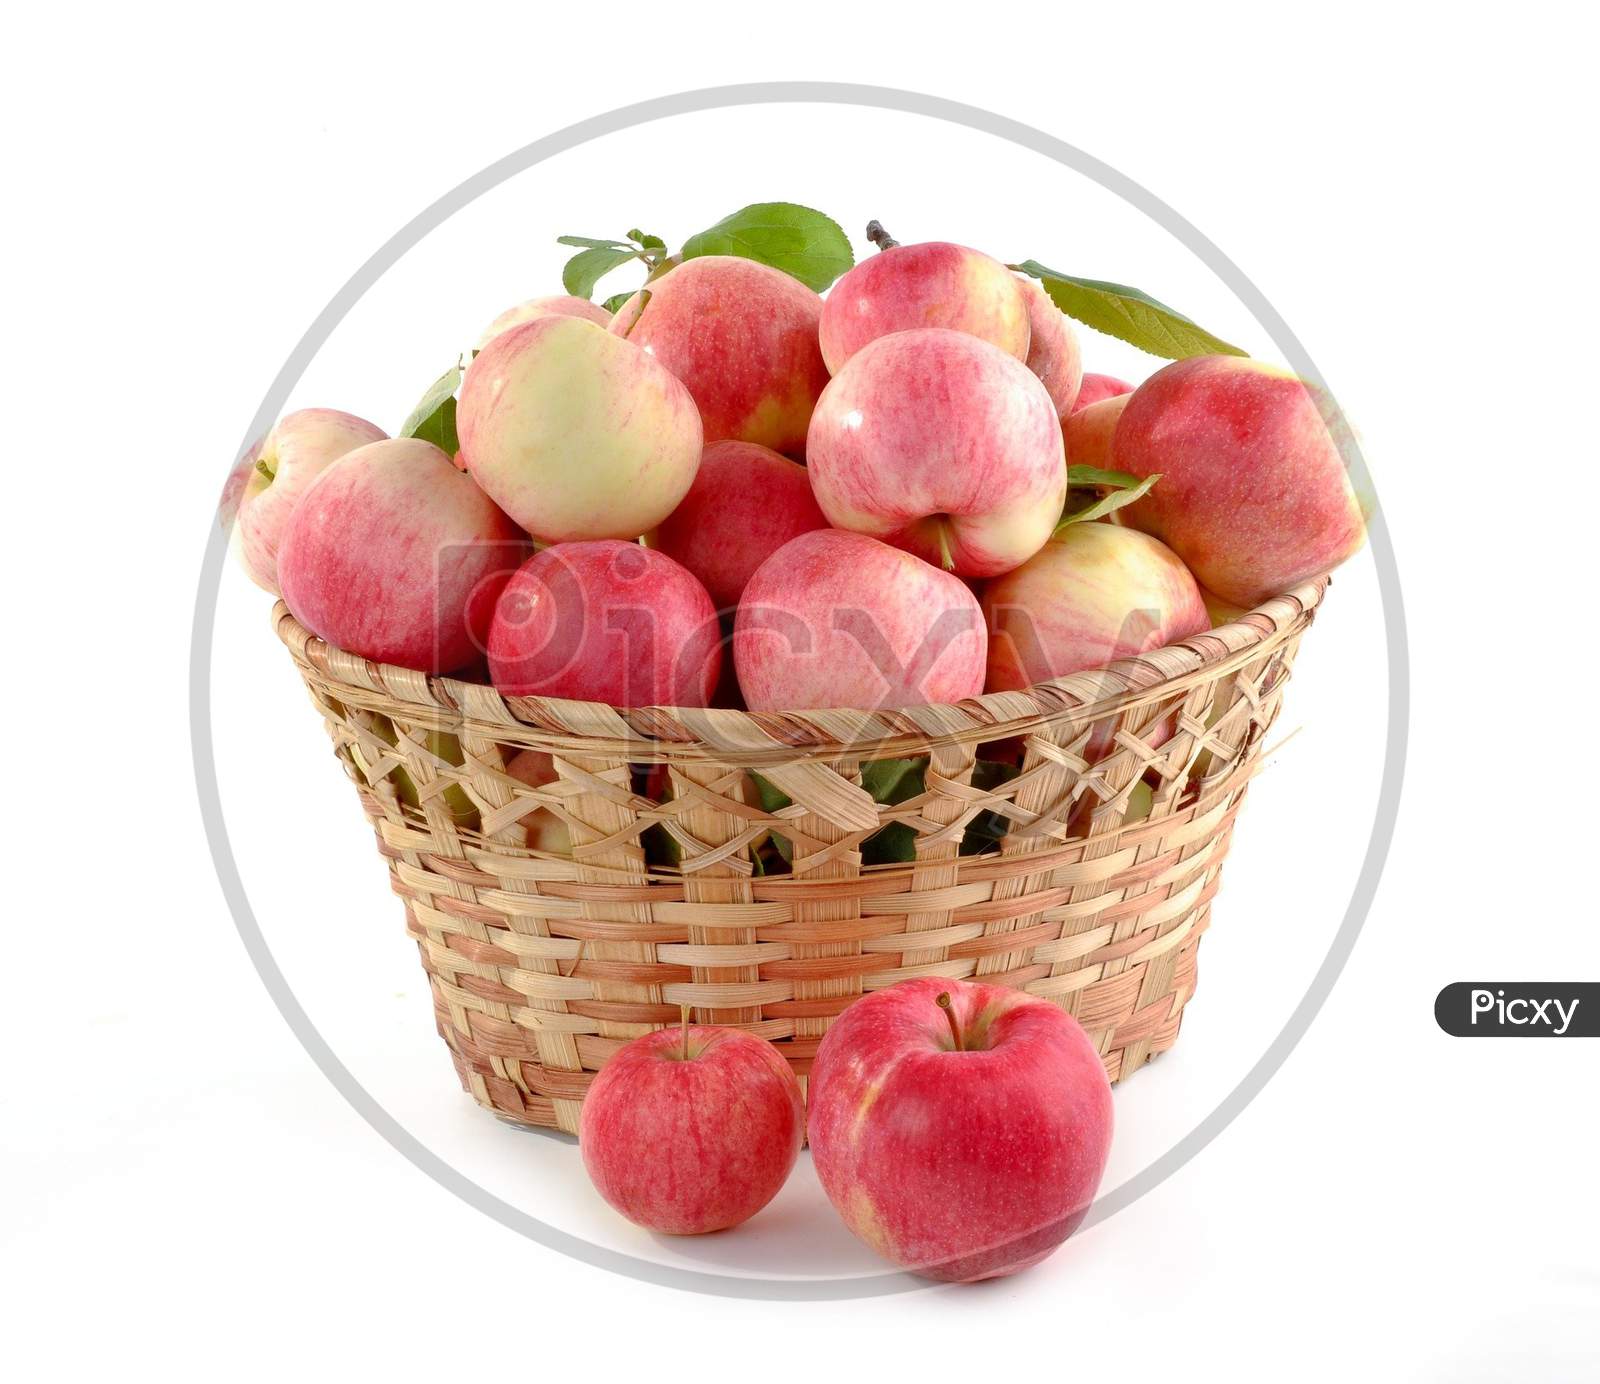 Apples basket fruits